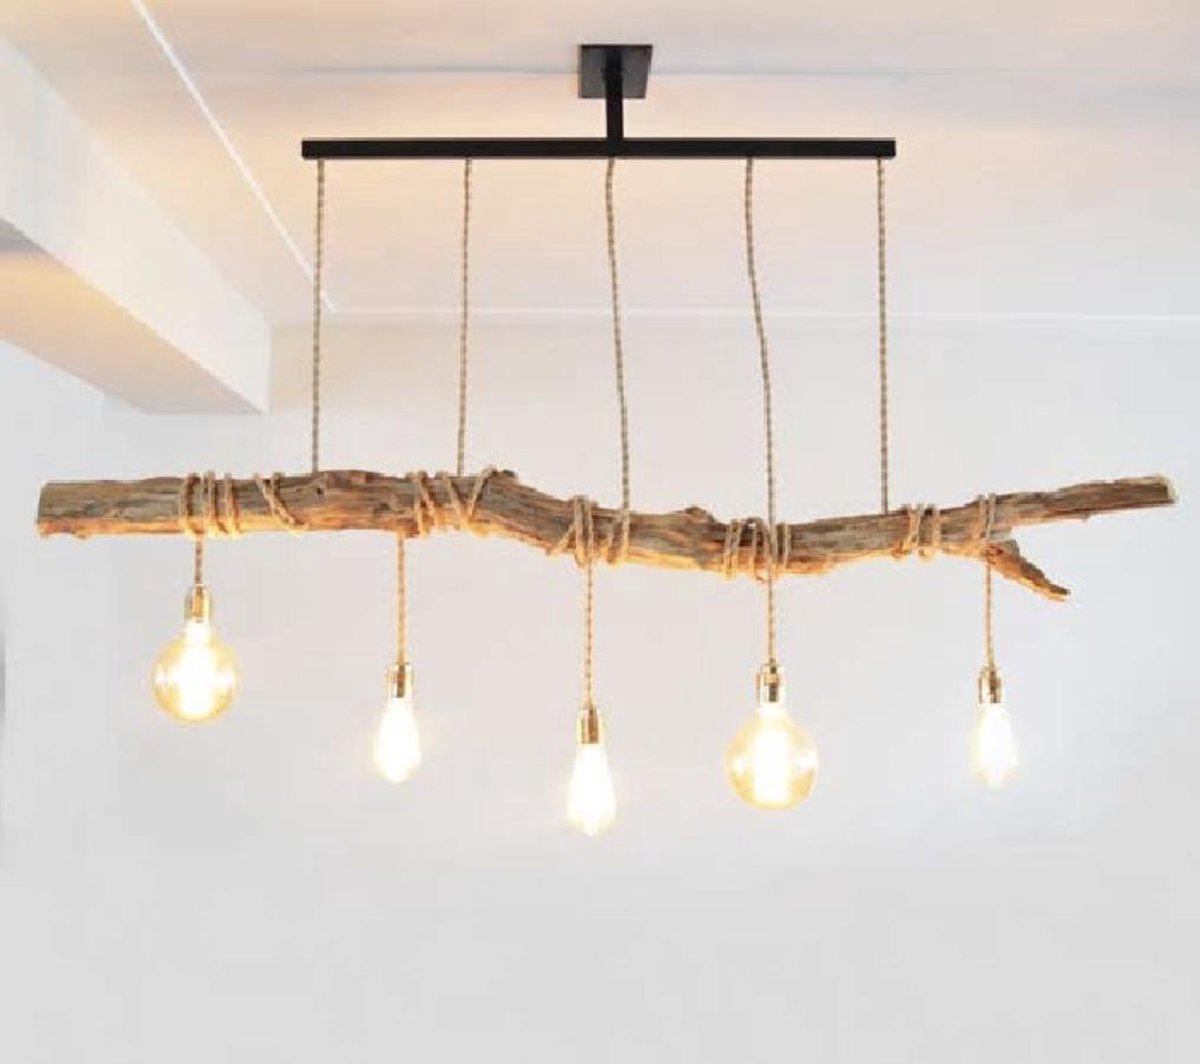 Apesso Houten Hanglamp (120cm Breed) | bol.com